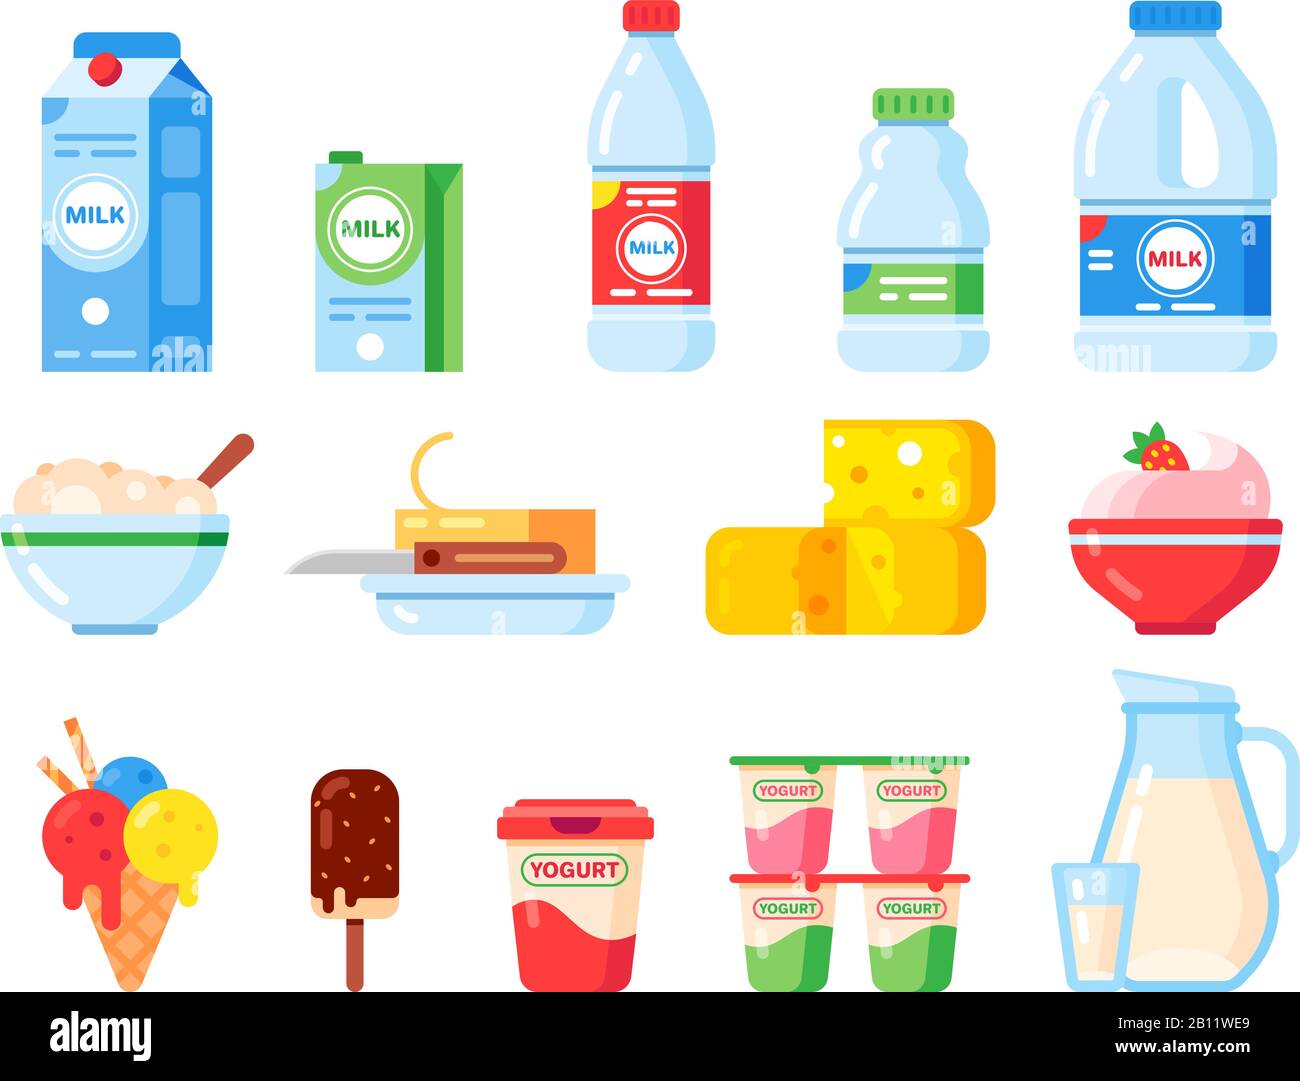 Milchprodukte. Gesunde Ernährung Joghurt, Eis und Milchkäse. Kollektion isolierter Vektor-Flat-Icons für frische Milchprodukte Stock Vektor